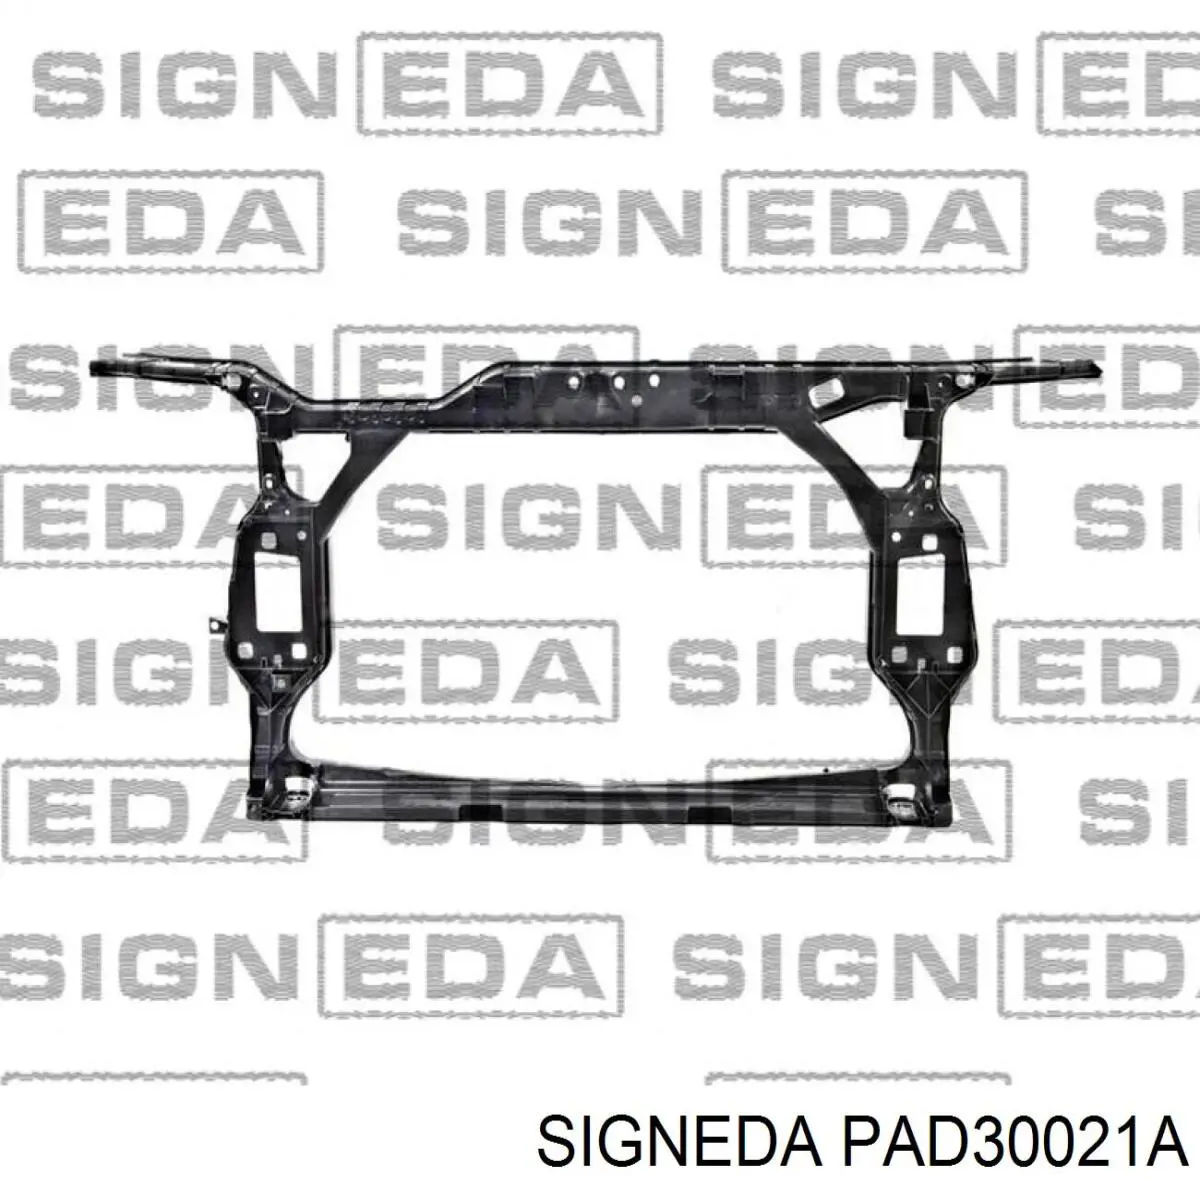 PAD30021A Signeda суппорт радиатора в сборе (монтажная панель крепления фар)